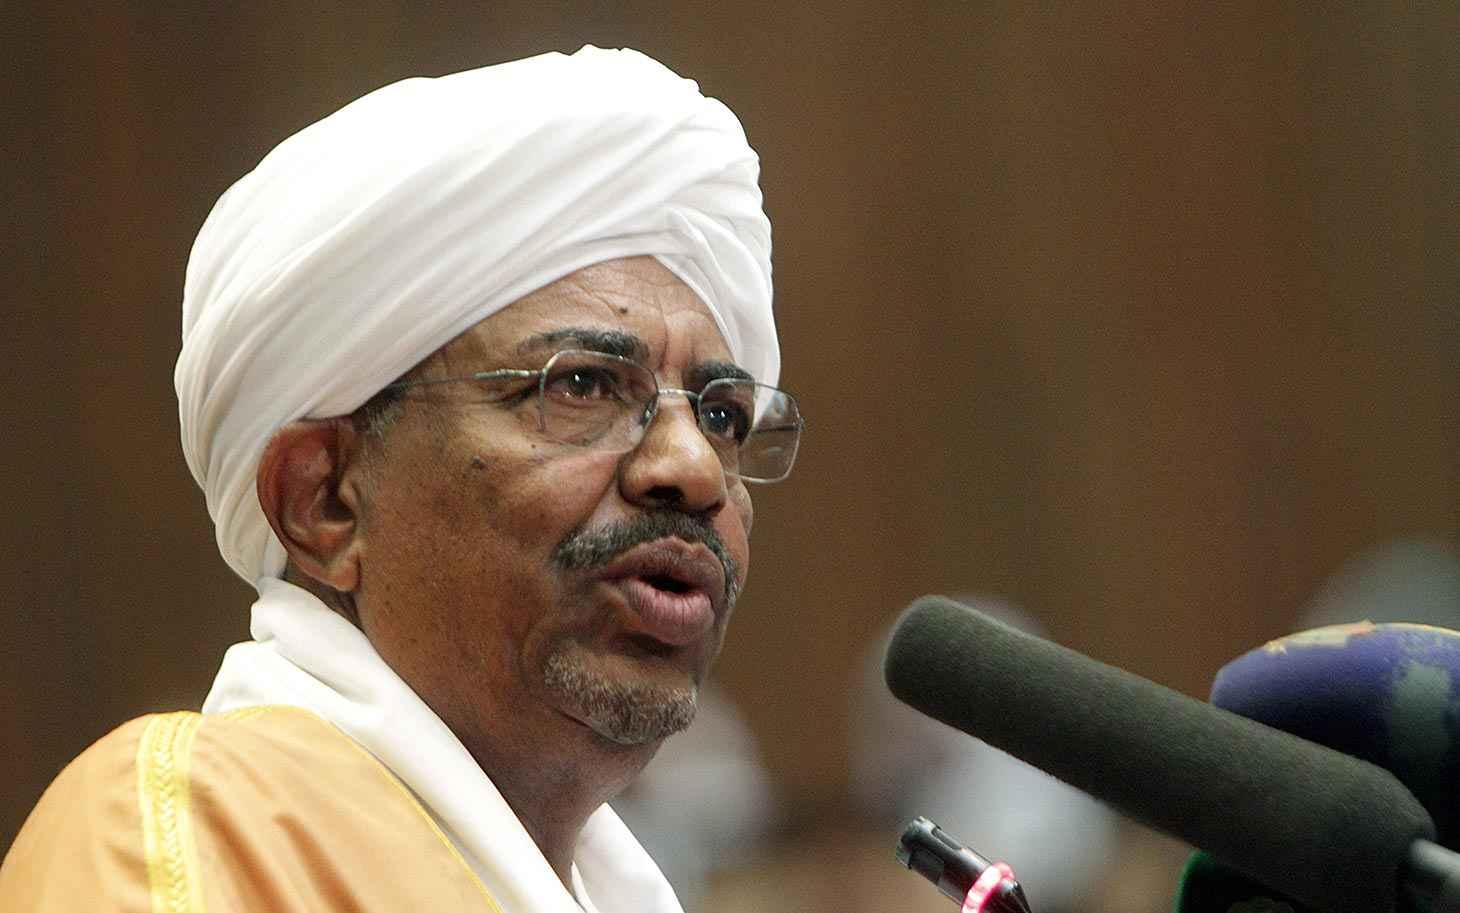 عمر البشير: السودان بلد حر.. والانتخابات نزيهة وشفافة